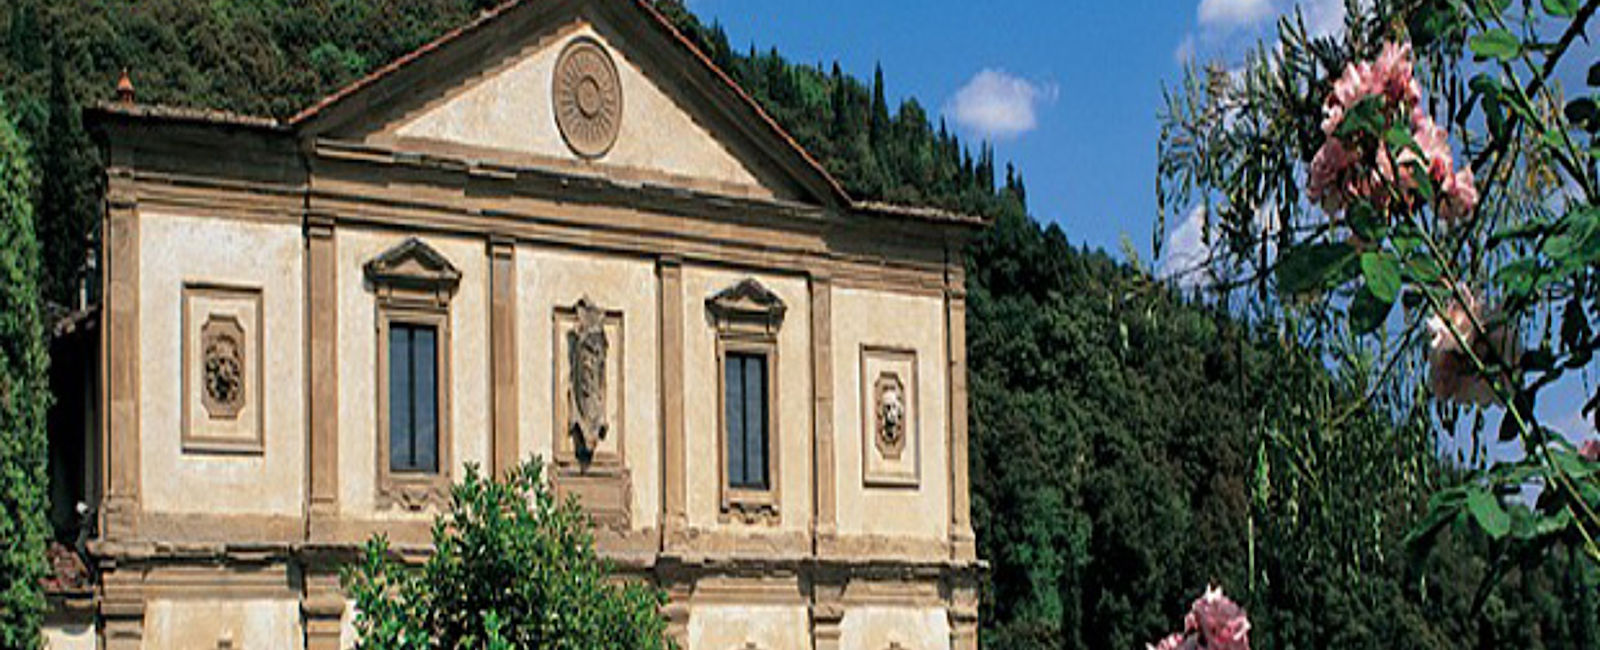 HOTEL TIPPS
 Belmond Villa San Michele 
 Eines der romantischsten Hotels der Welt im Herzen von Florenz 